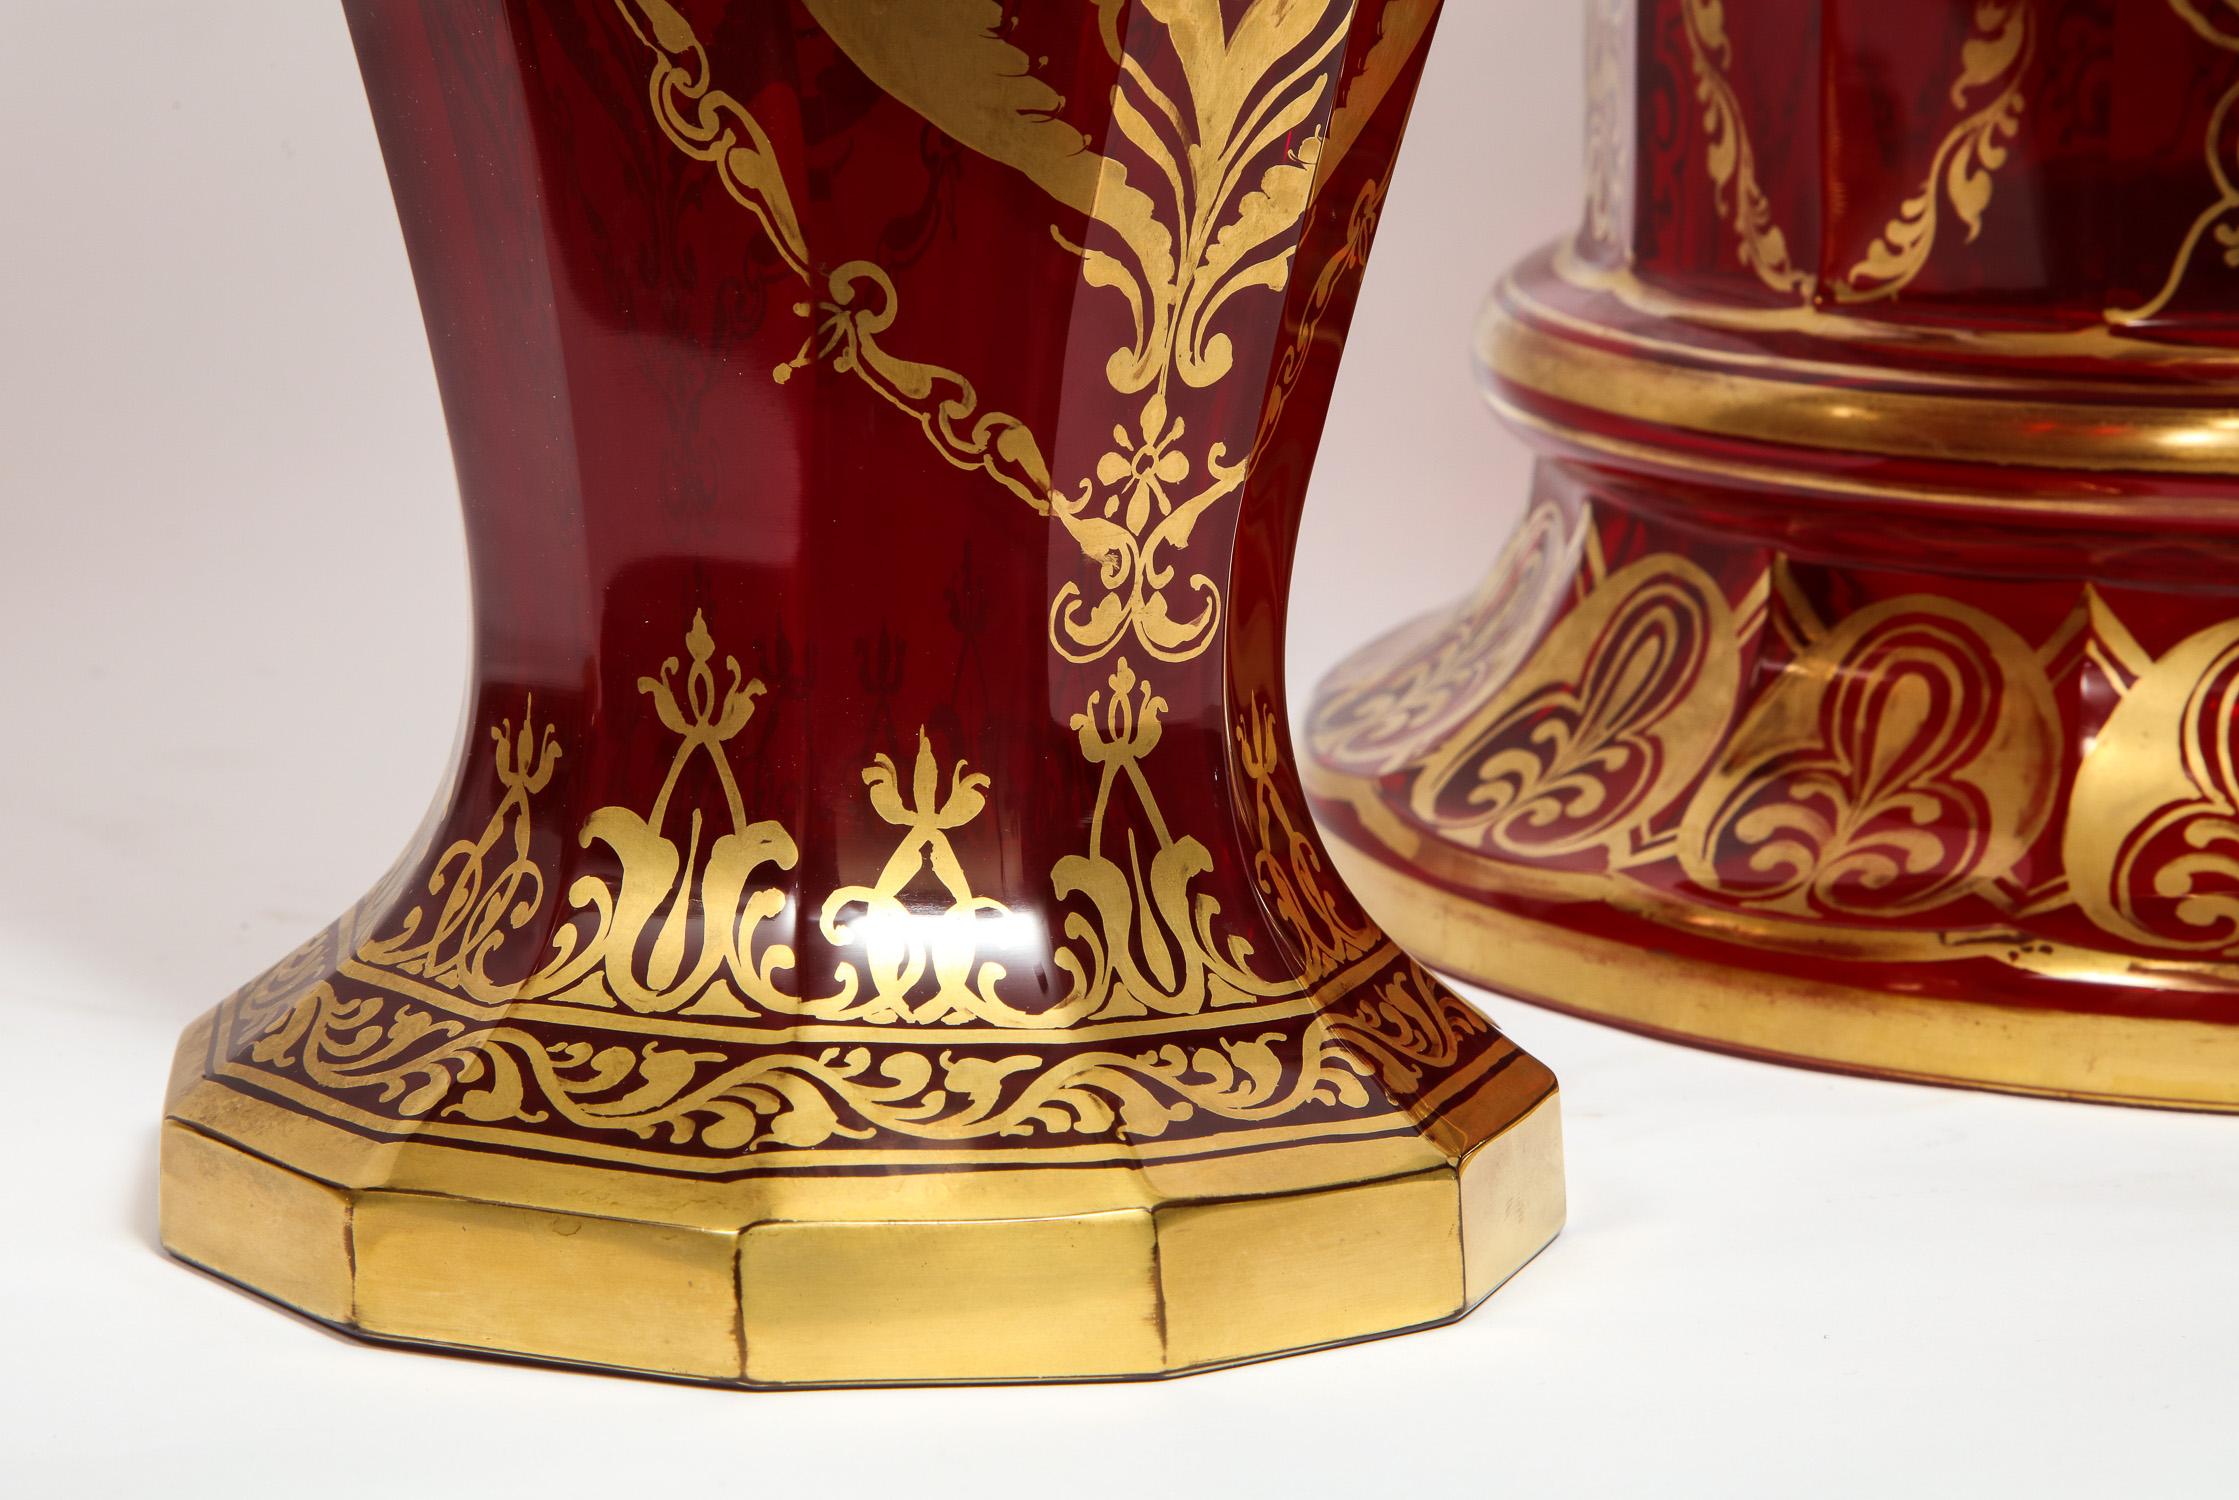 Paire de vases magistraux en verre taillé de Bohème sur socle, style 